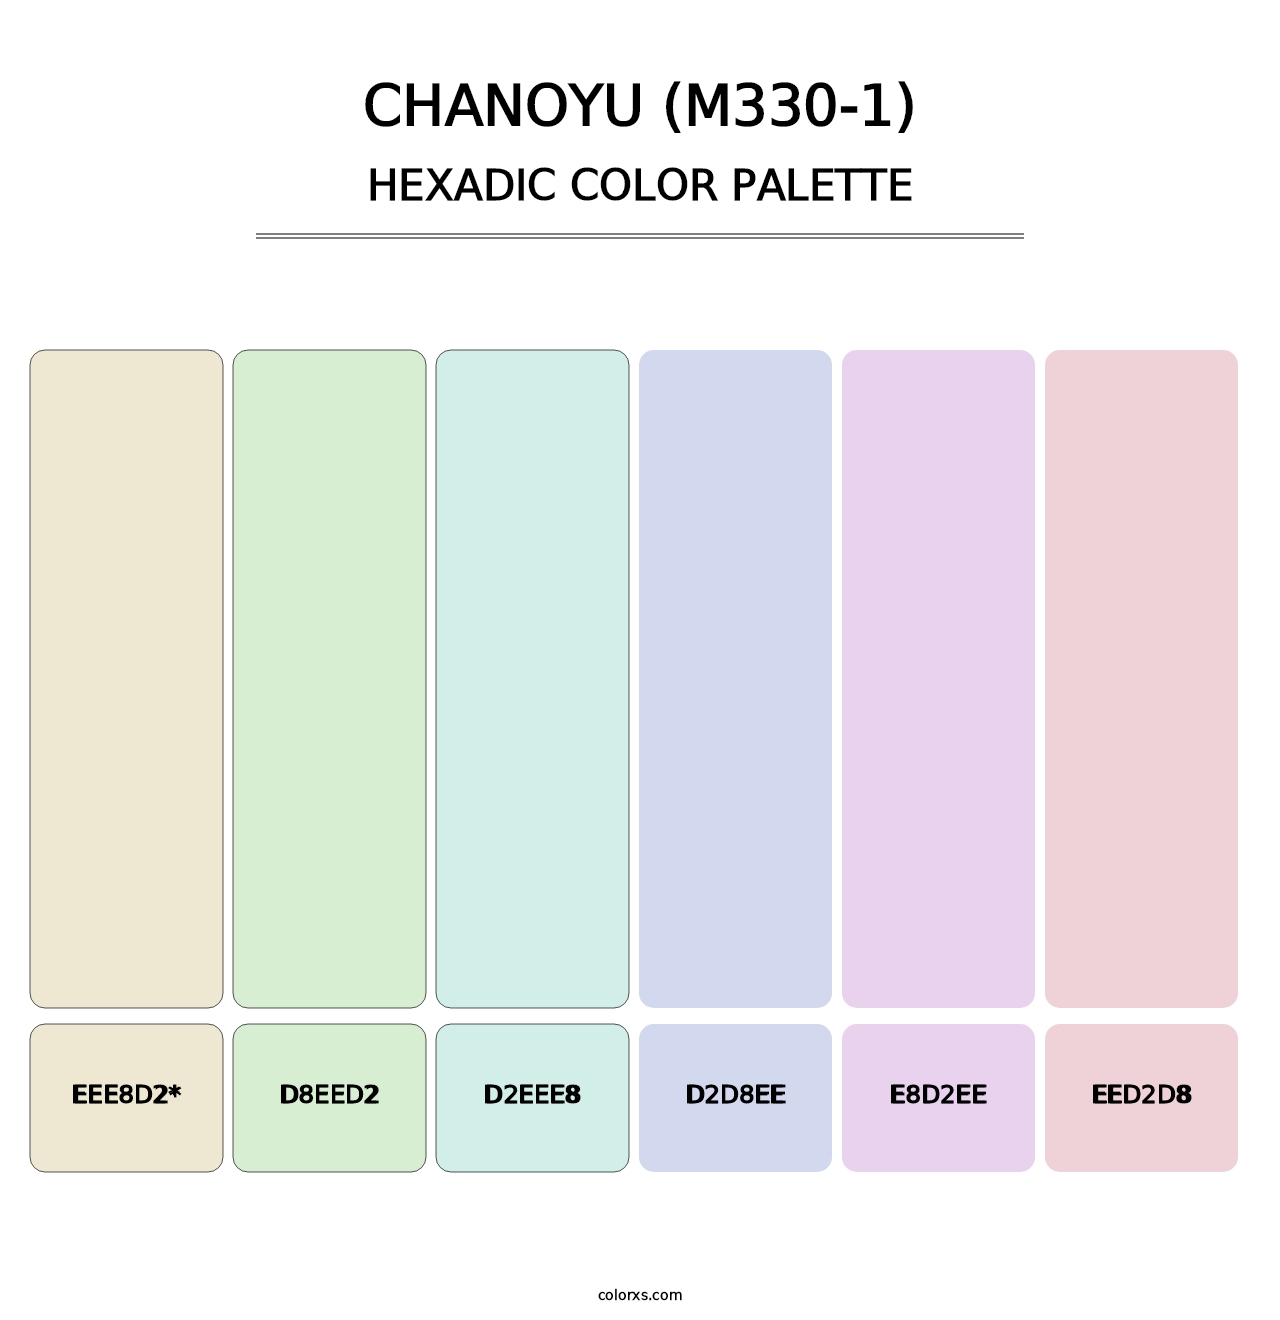 Chanoyu (M330-1) - Hexadic Color Palette